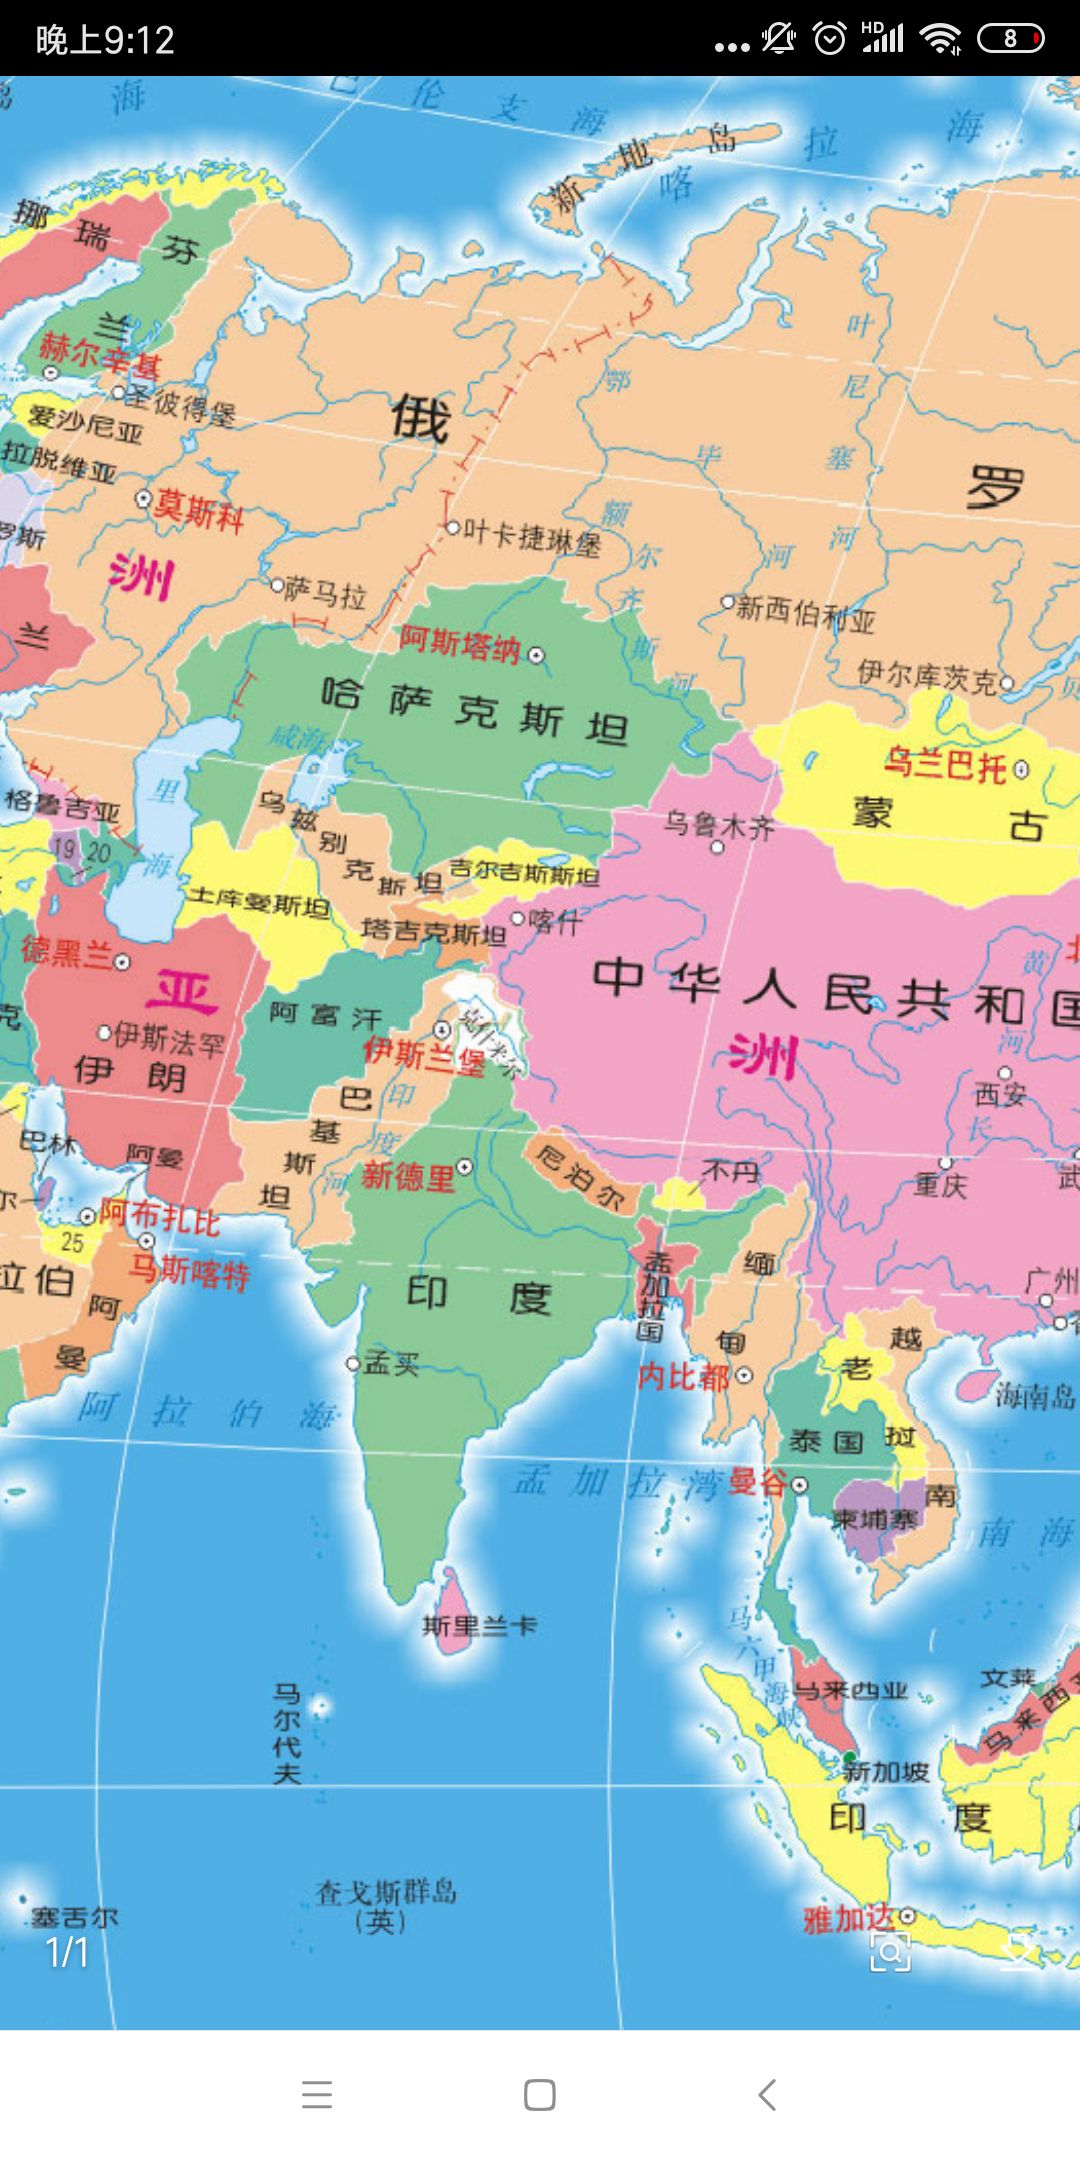 大军真要来了,今天查了一下地图,我的天,大中国危险了,印度,巴基斯坦